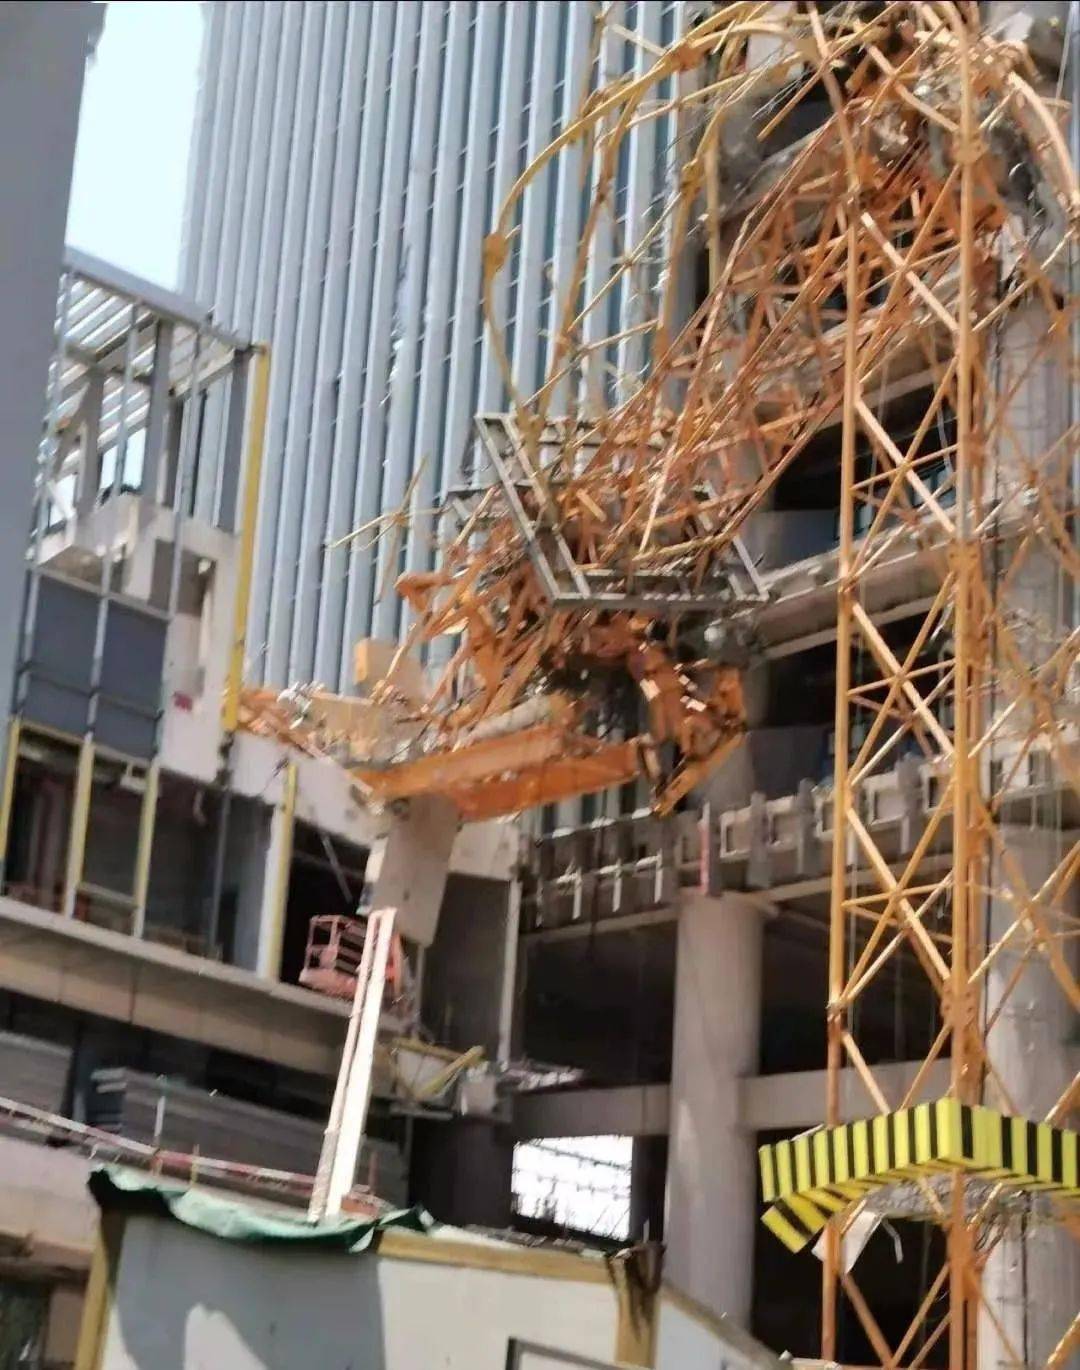 据网友爆料:2021年8月19日福建厦门一在建工地塔吊发生倒塌事故,伤亡